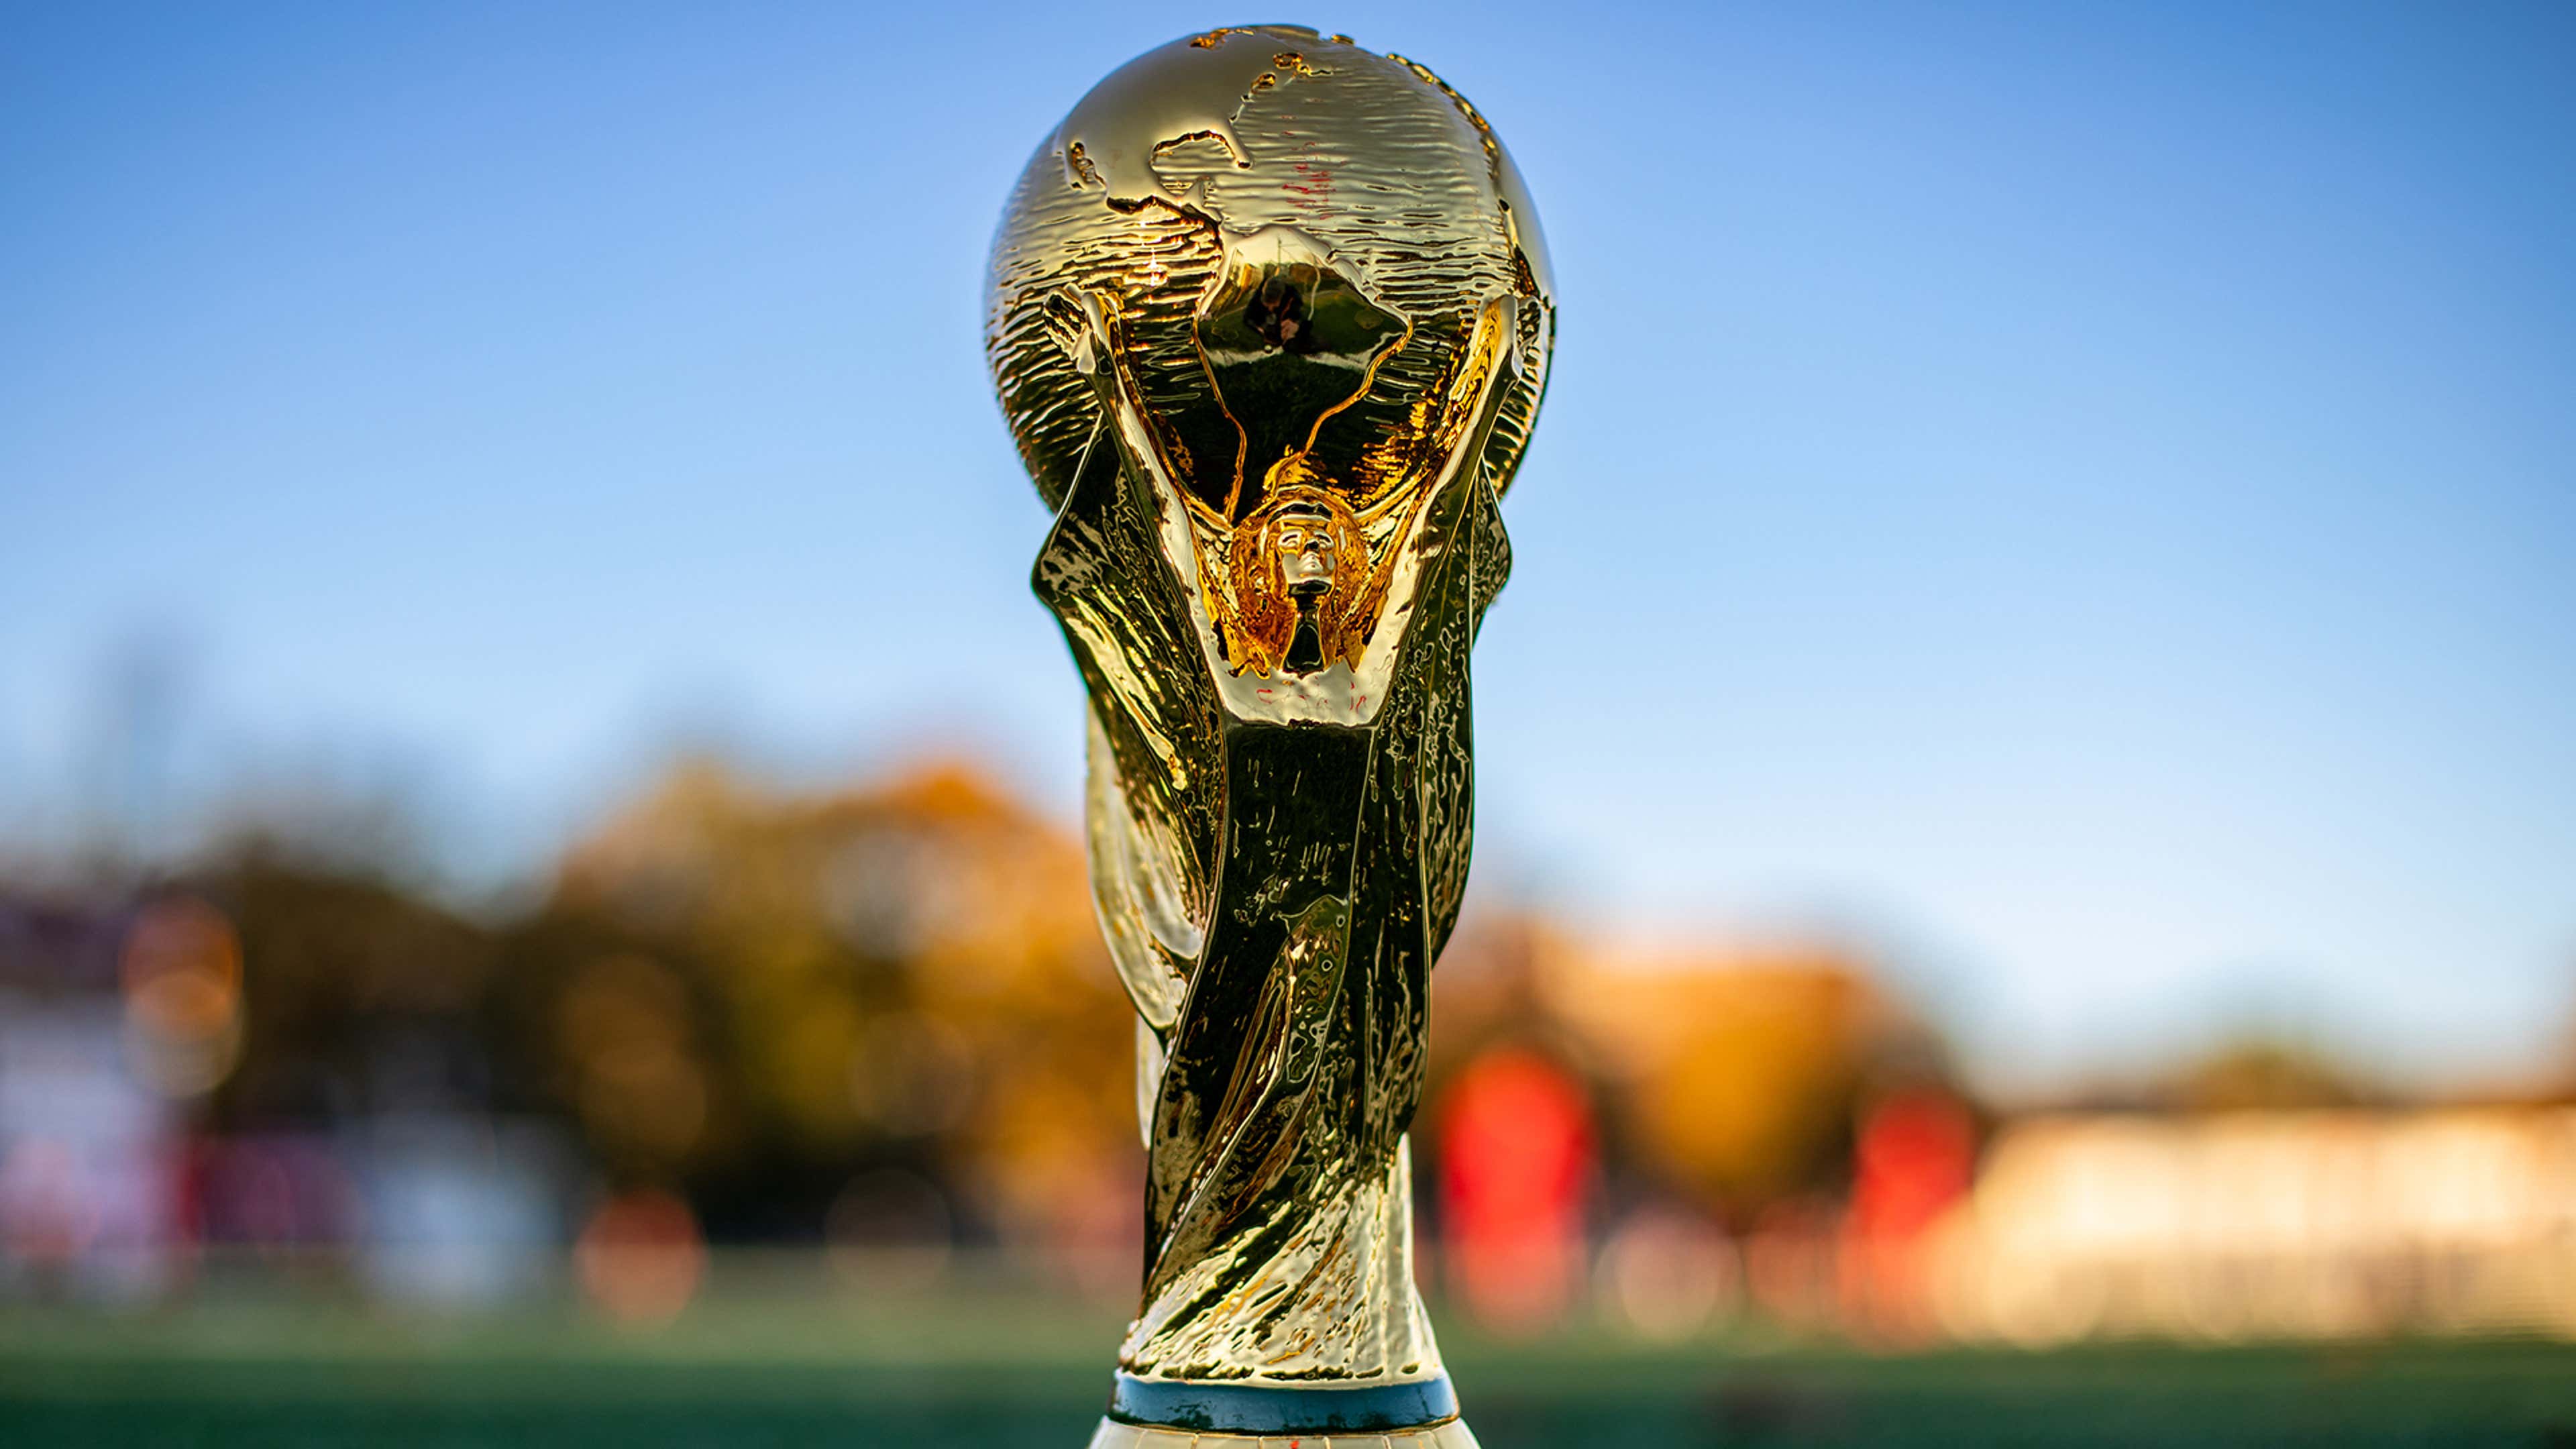 أين يقام كأس العالم 2030؟ وما الدول المستضيفة؟ | مصر Goal.com